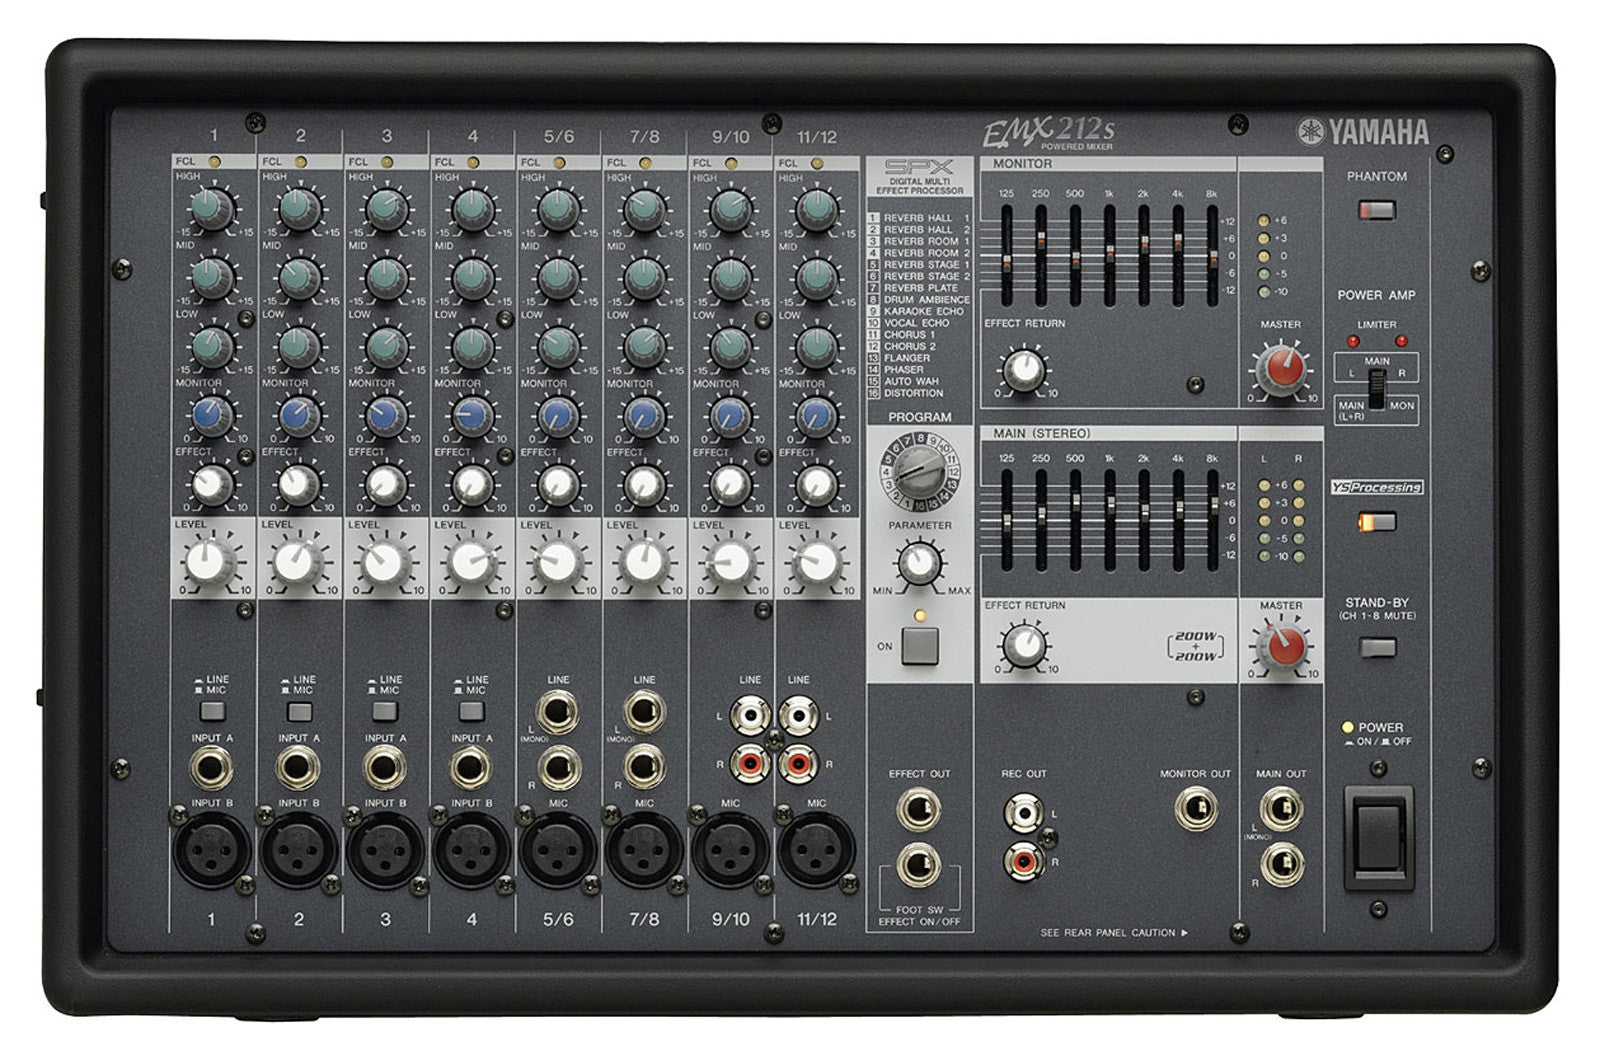 Yamaha Pro Audio - EMX212S